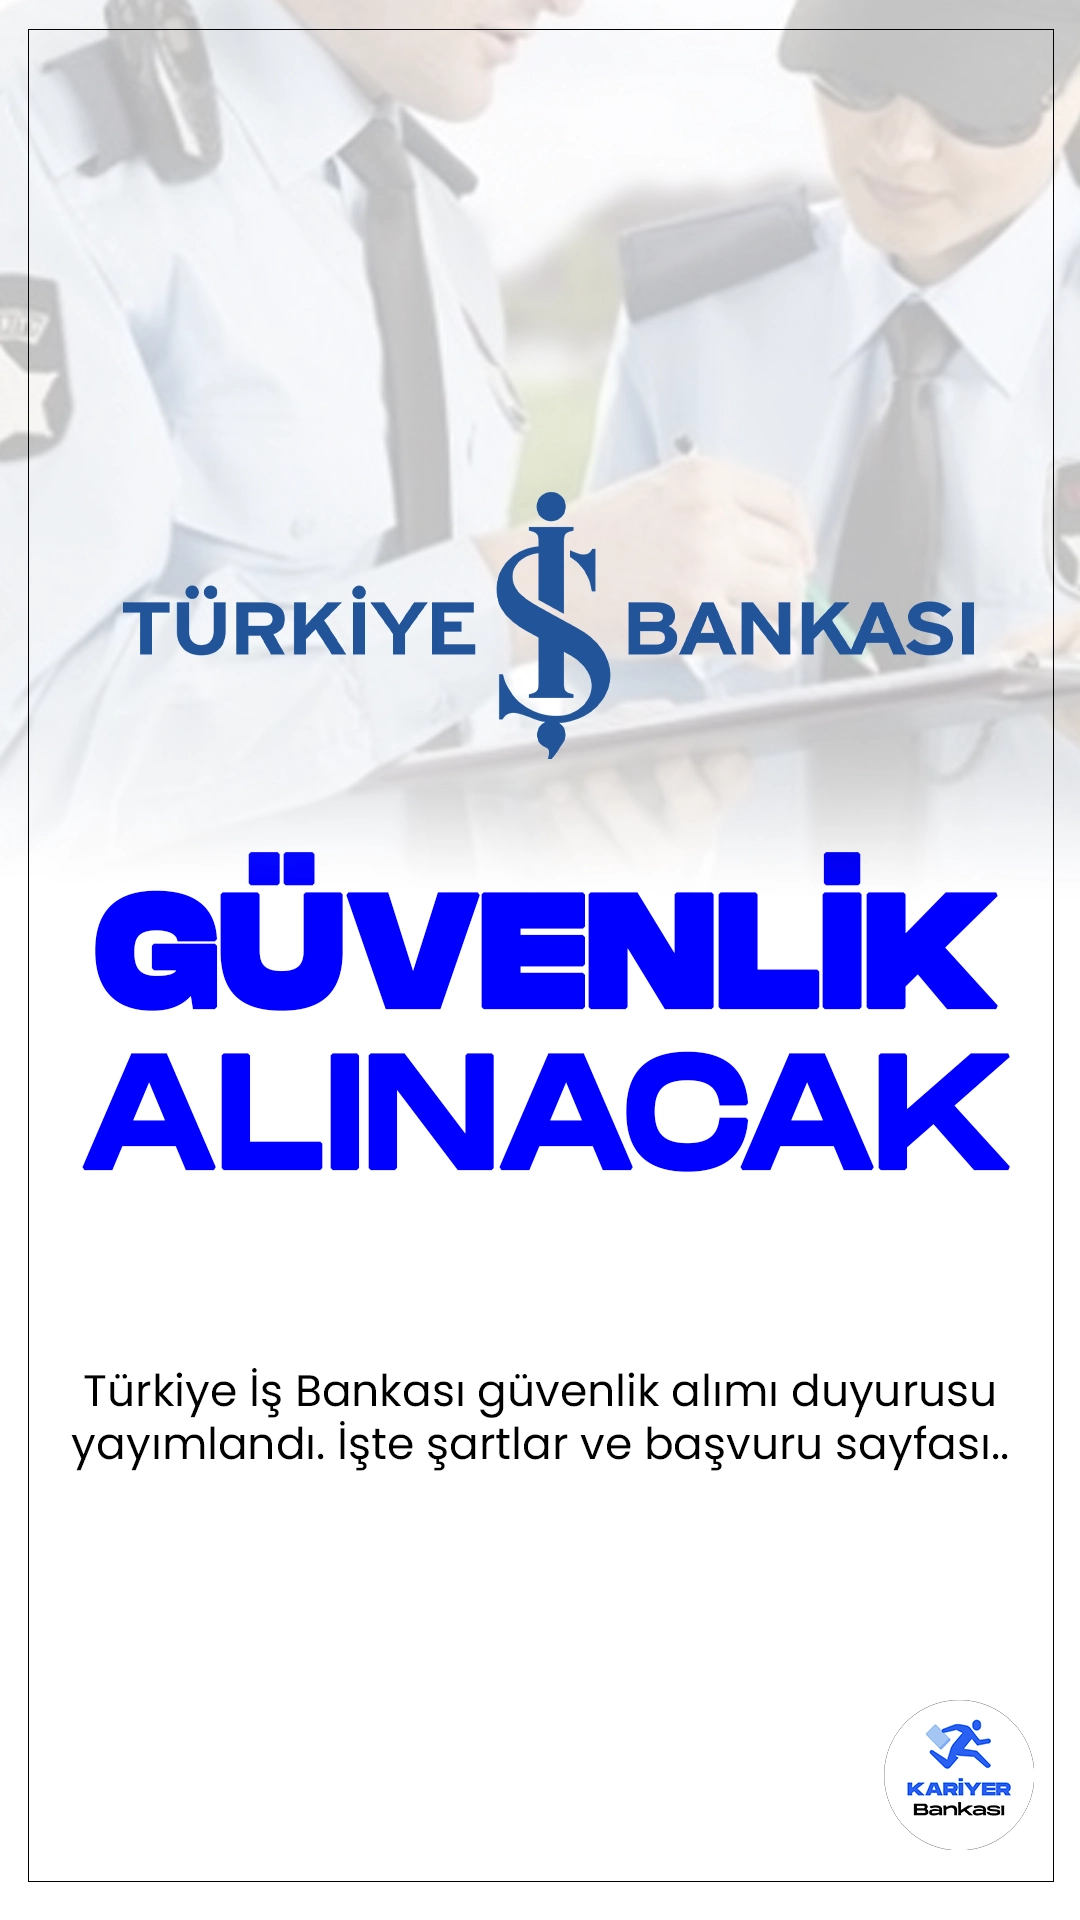 İş Bankası Güvenlik Alımı Yapacak. Türkiye İş Bankası sayfasından yayımlanan duyuruya göre, İş Bankası Genel Müdürlüğünde çalıştırılmak üzere silahlı güvenlik görevlisi alımı yapılacak. Başvurular İş Bankası sayfasından online olarak gerçekleştirilecek. Başvuru yapacak adayların belirtilen şartları sağlaması gerekmektedir.